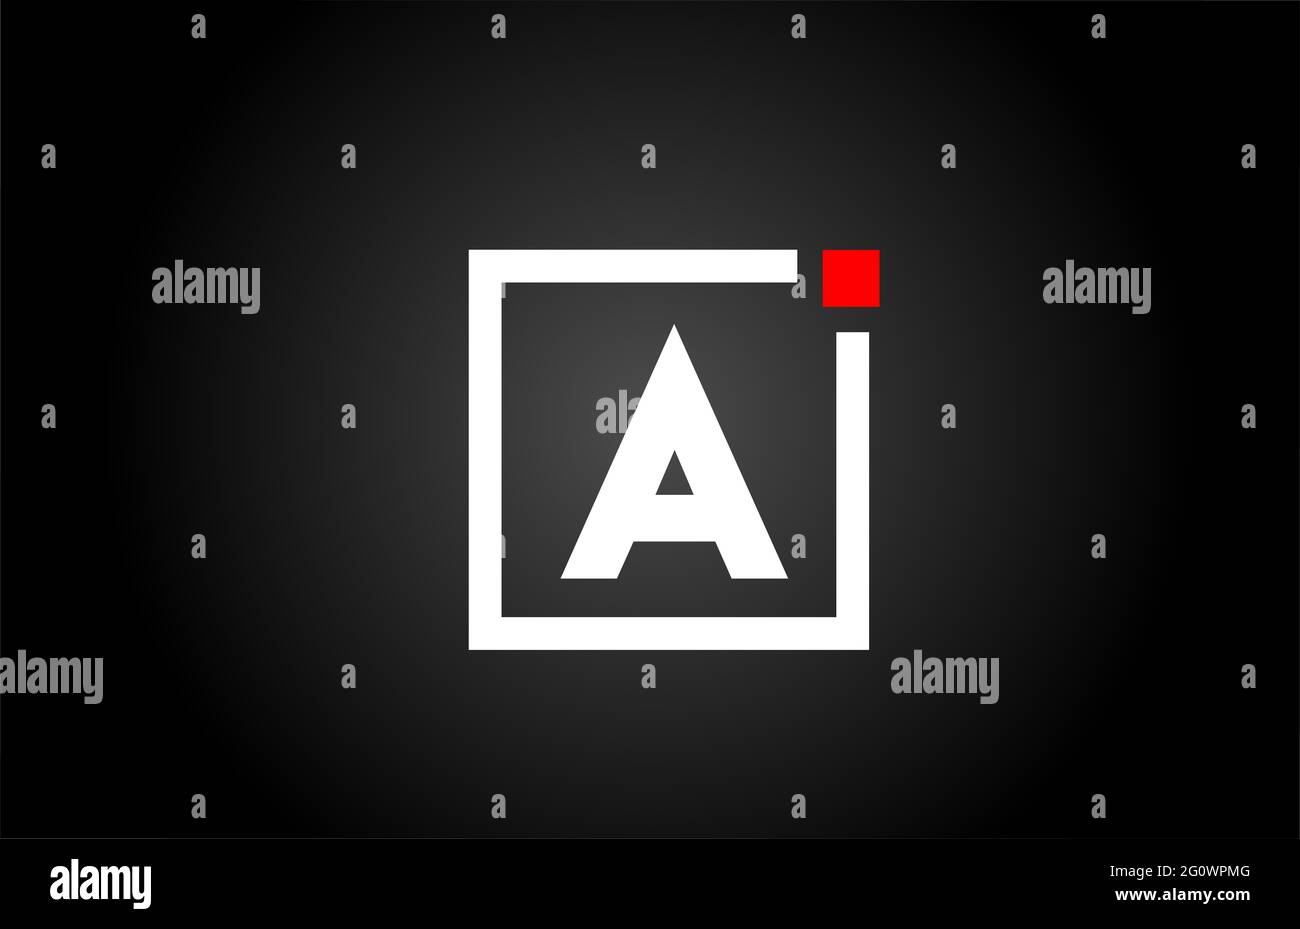 Un logo con l'icona di una lettera alfabetica in bianco e nero. Design aziendale e aziendale con punto quadrato e rosso. Modello di identità aziendale creativa Foto Stock